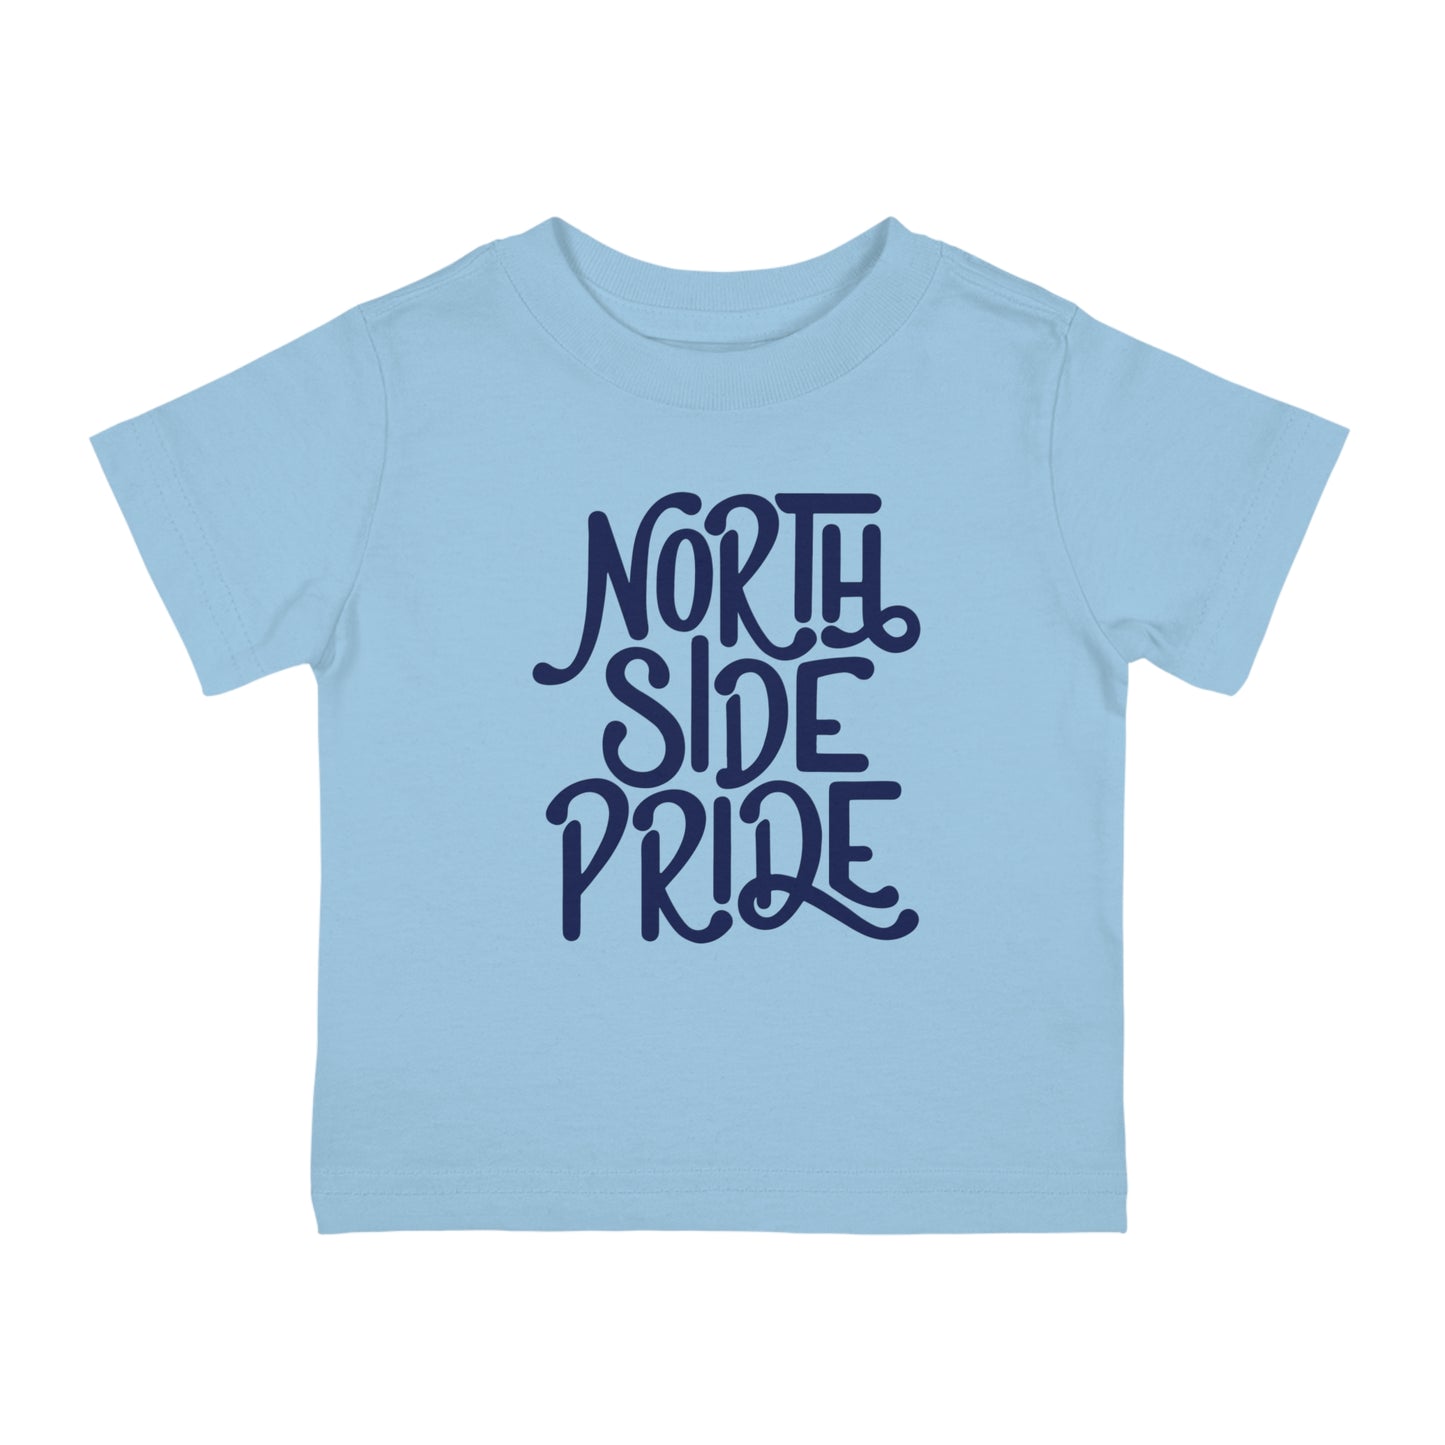 North Side Pride Infant Tee. Light Blue.